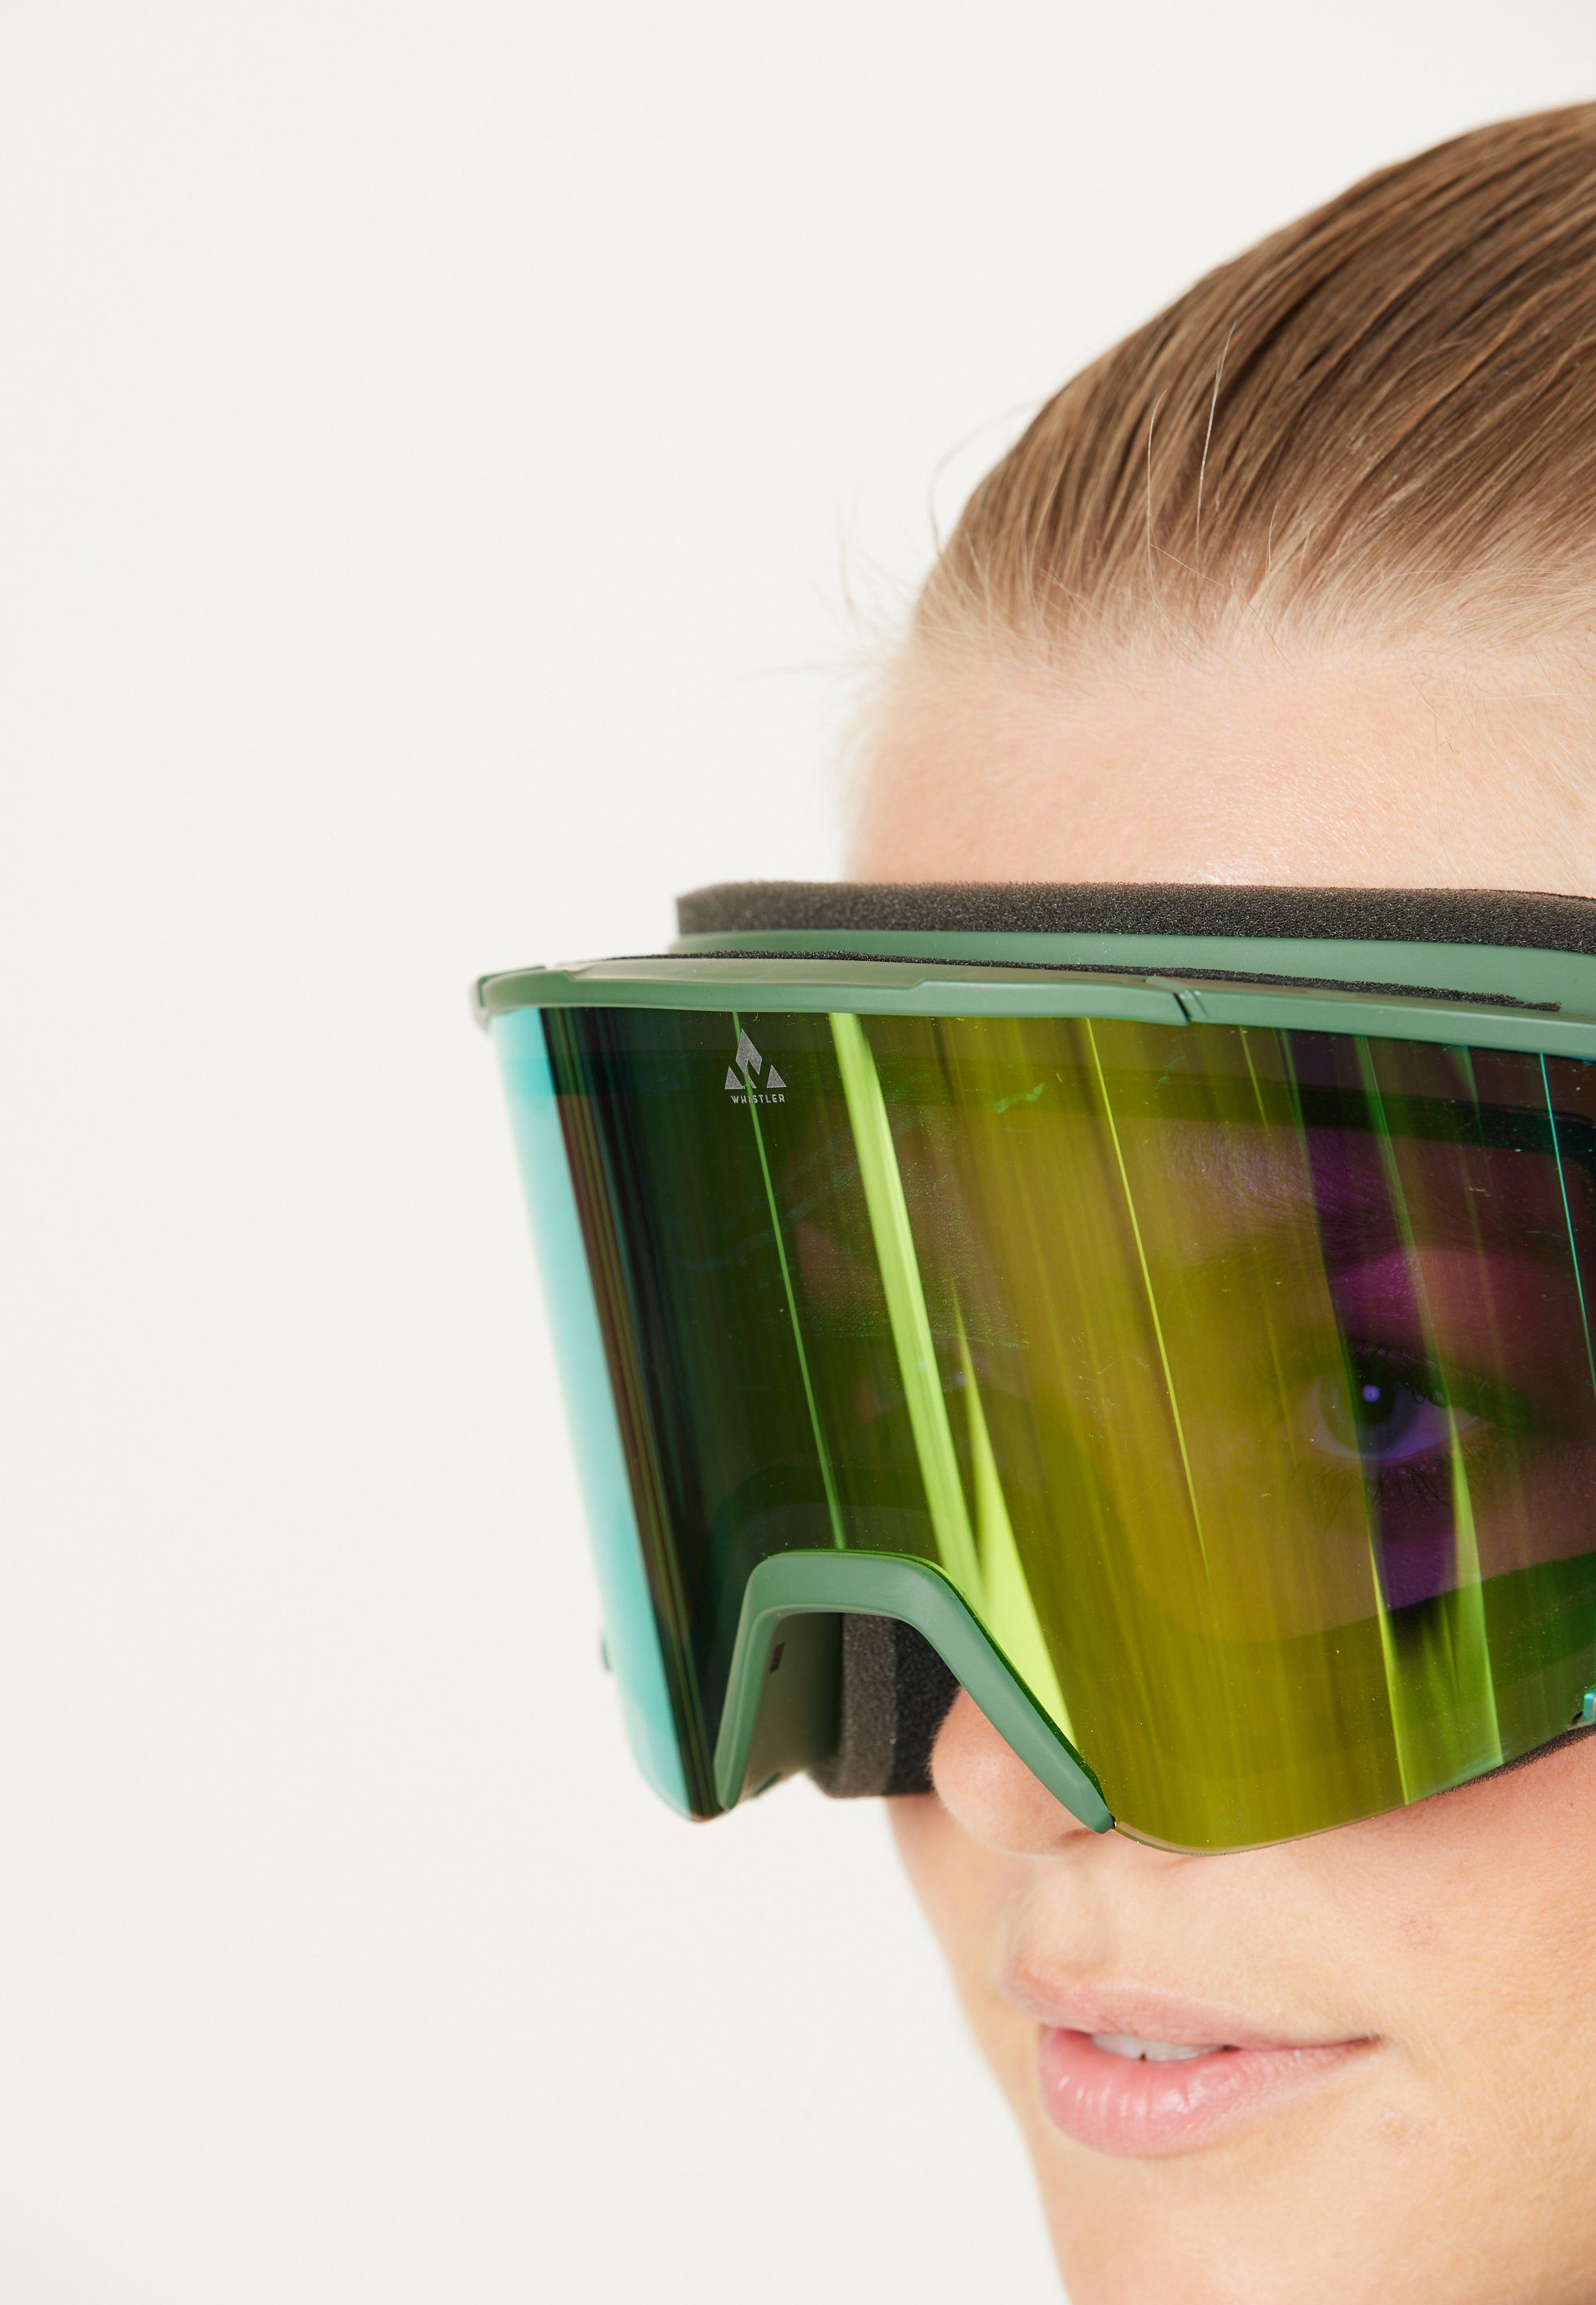 WHISTLER Skibrille grün WS6200, Panorama-Gläsern mit